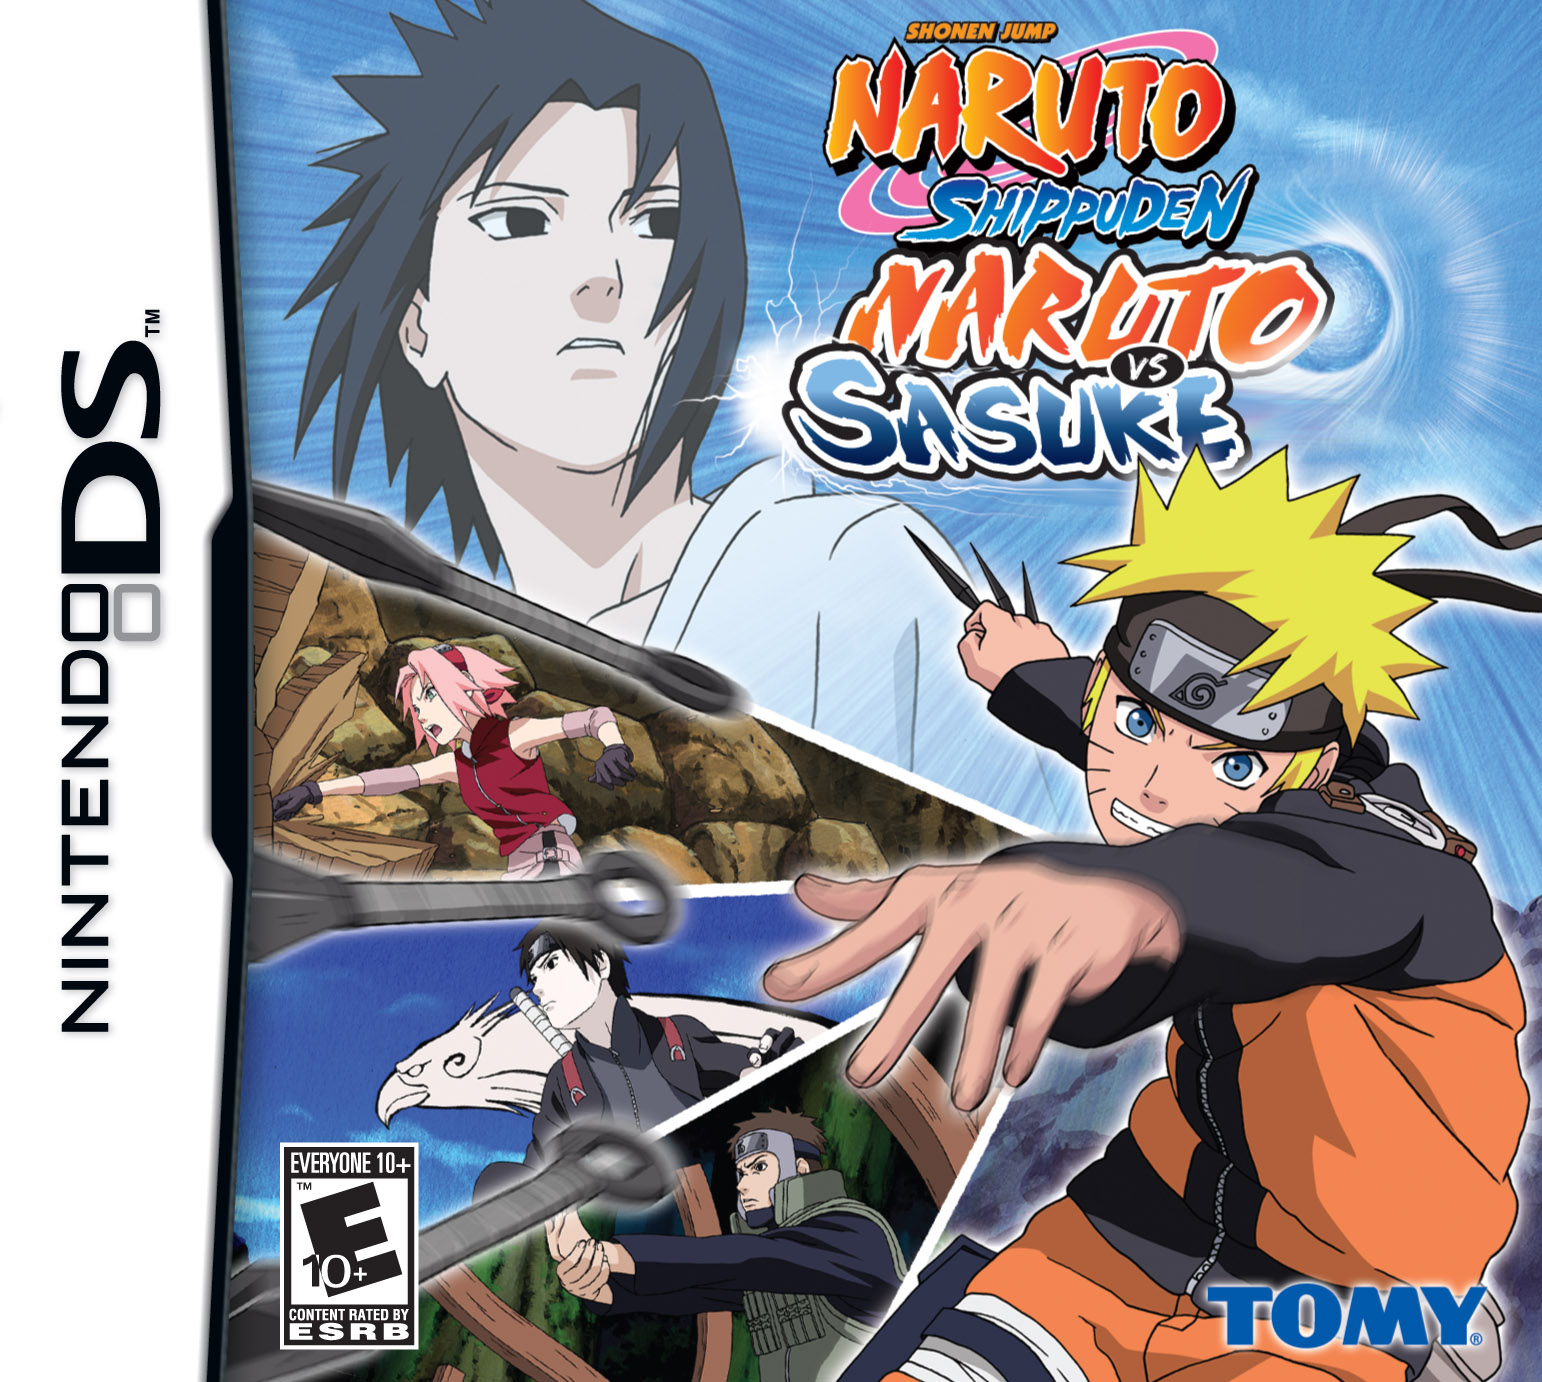 Naruto: Shippuden (season 3) - Wikipedia